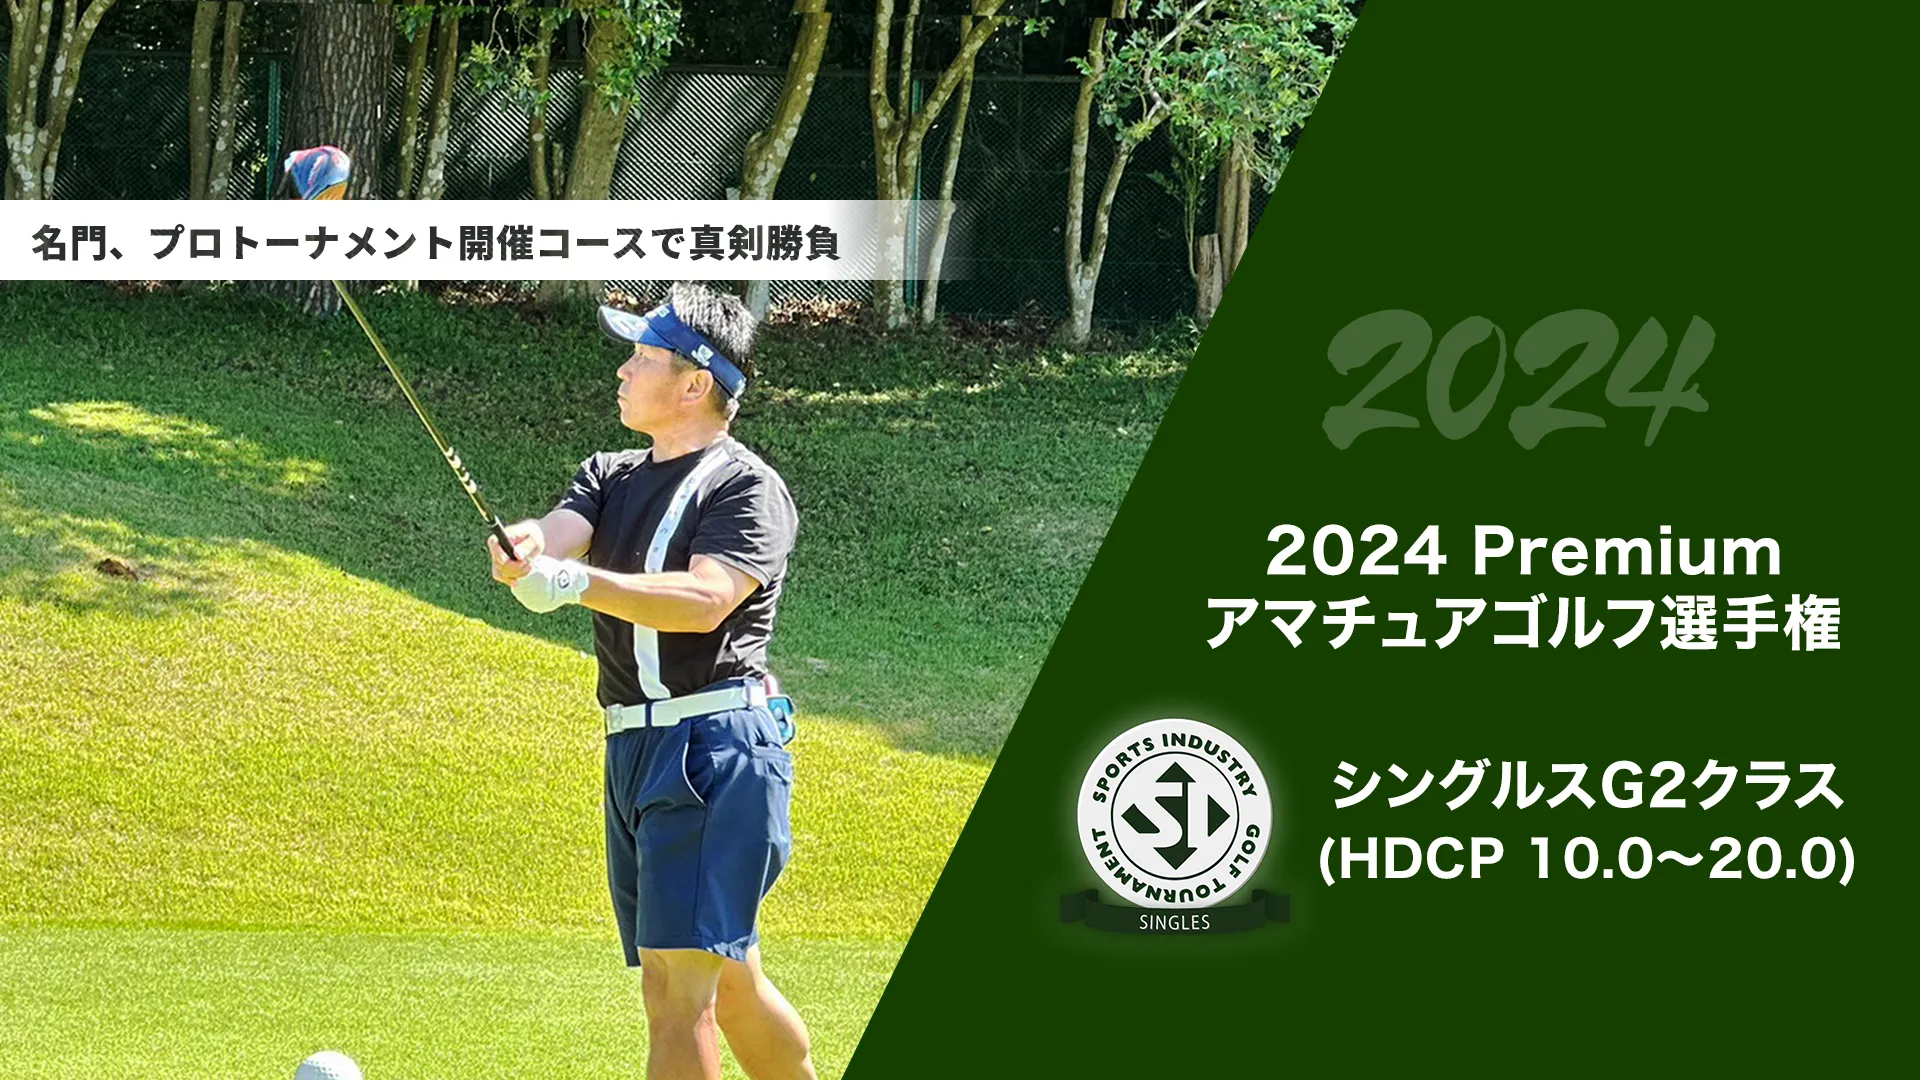 2024Premiumアマチュアゴルフ選手権_シングルスG2クラス(HDCP 10.0～20.0)